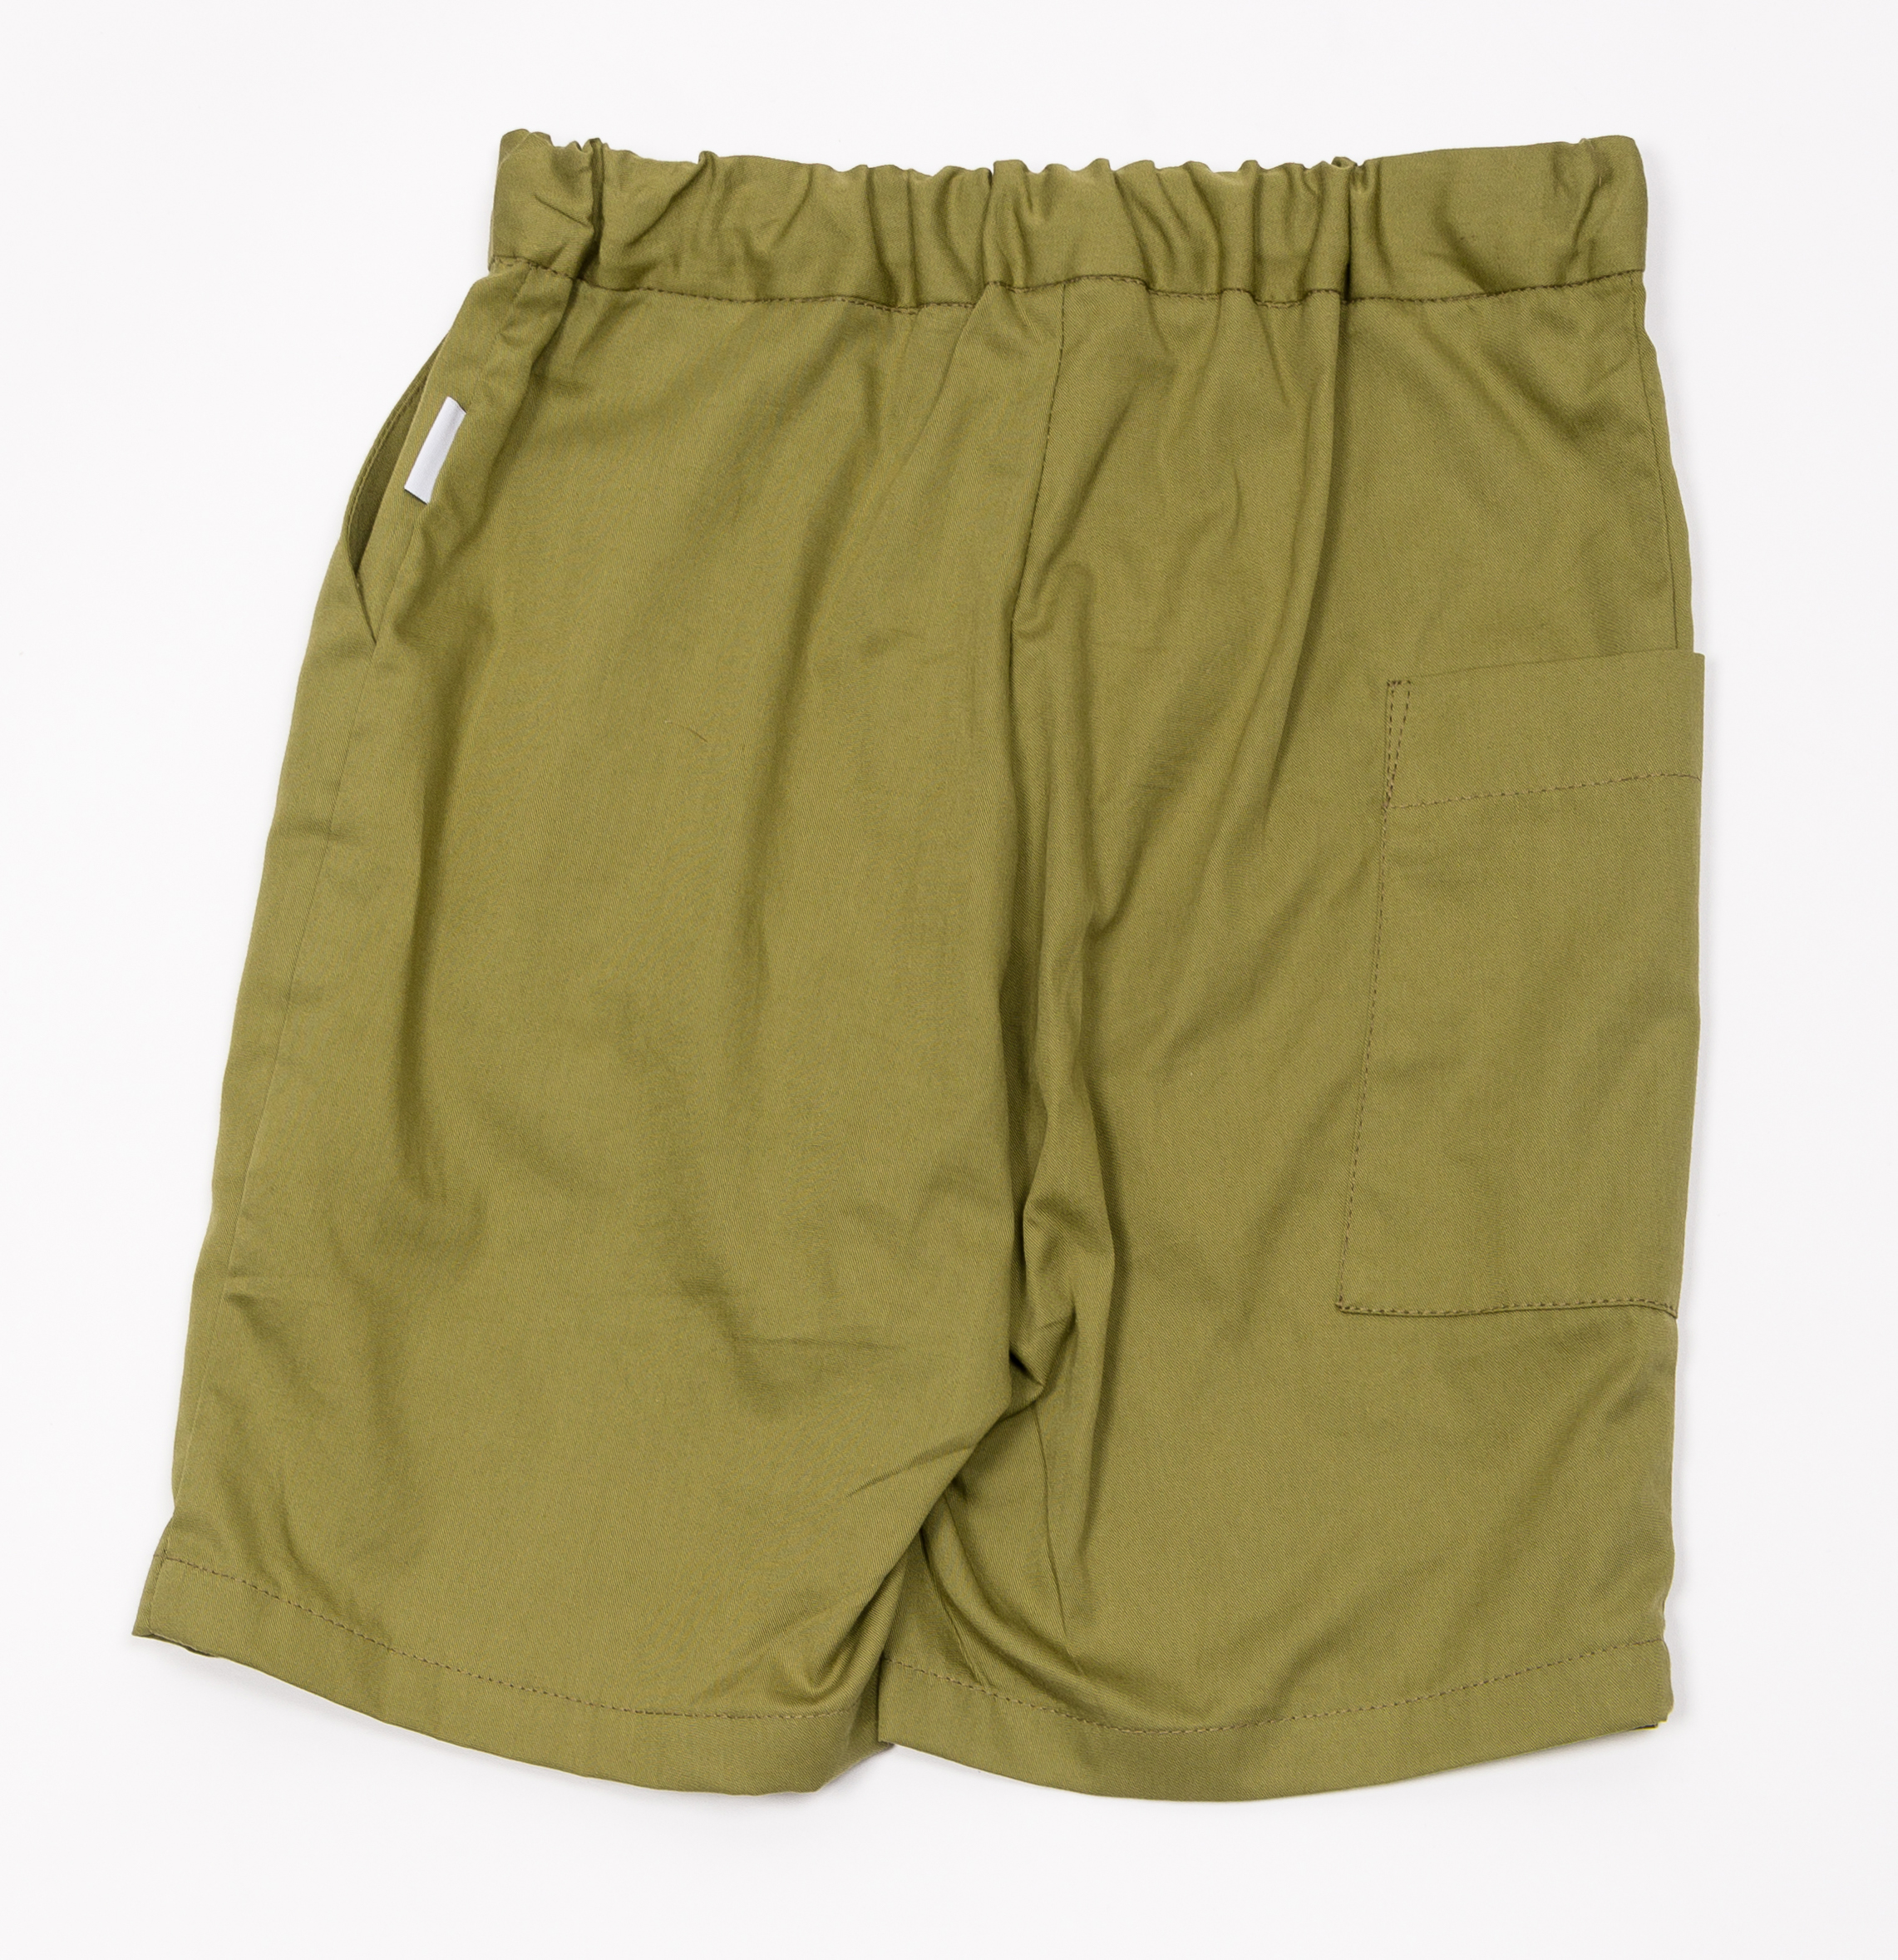                                                                                                                                              Pocket shorts - Green